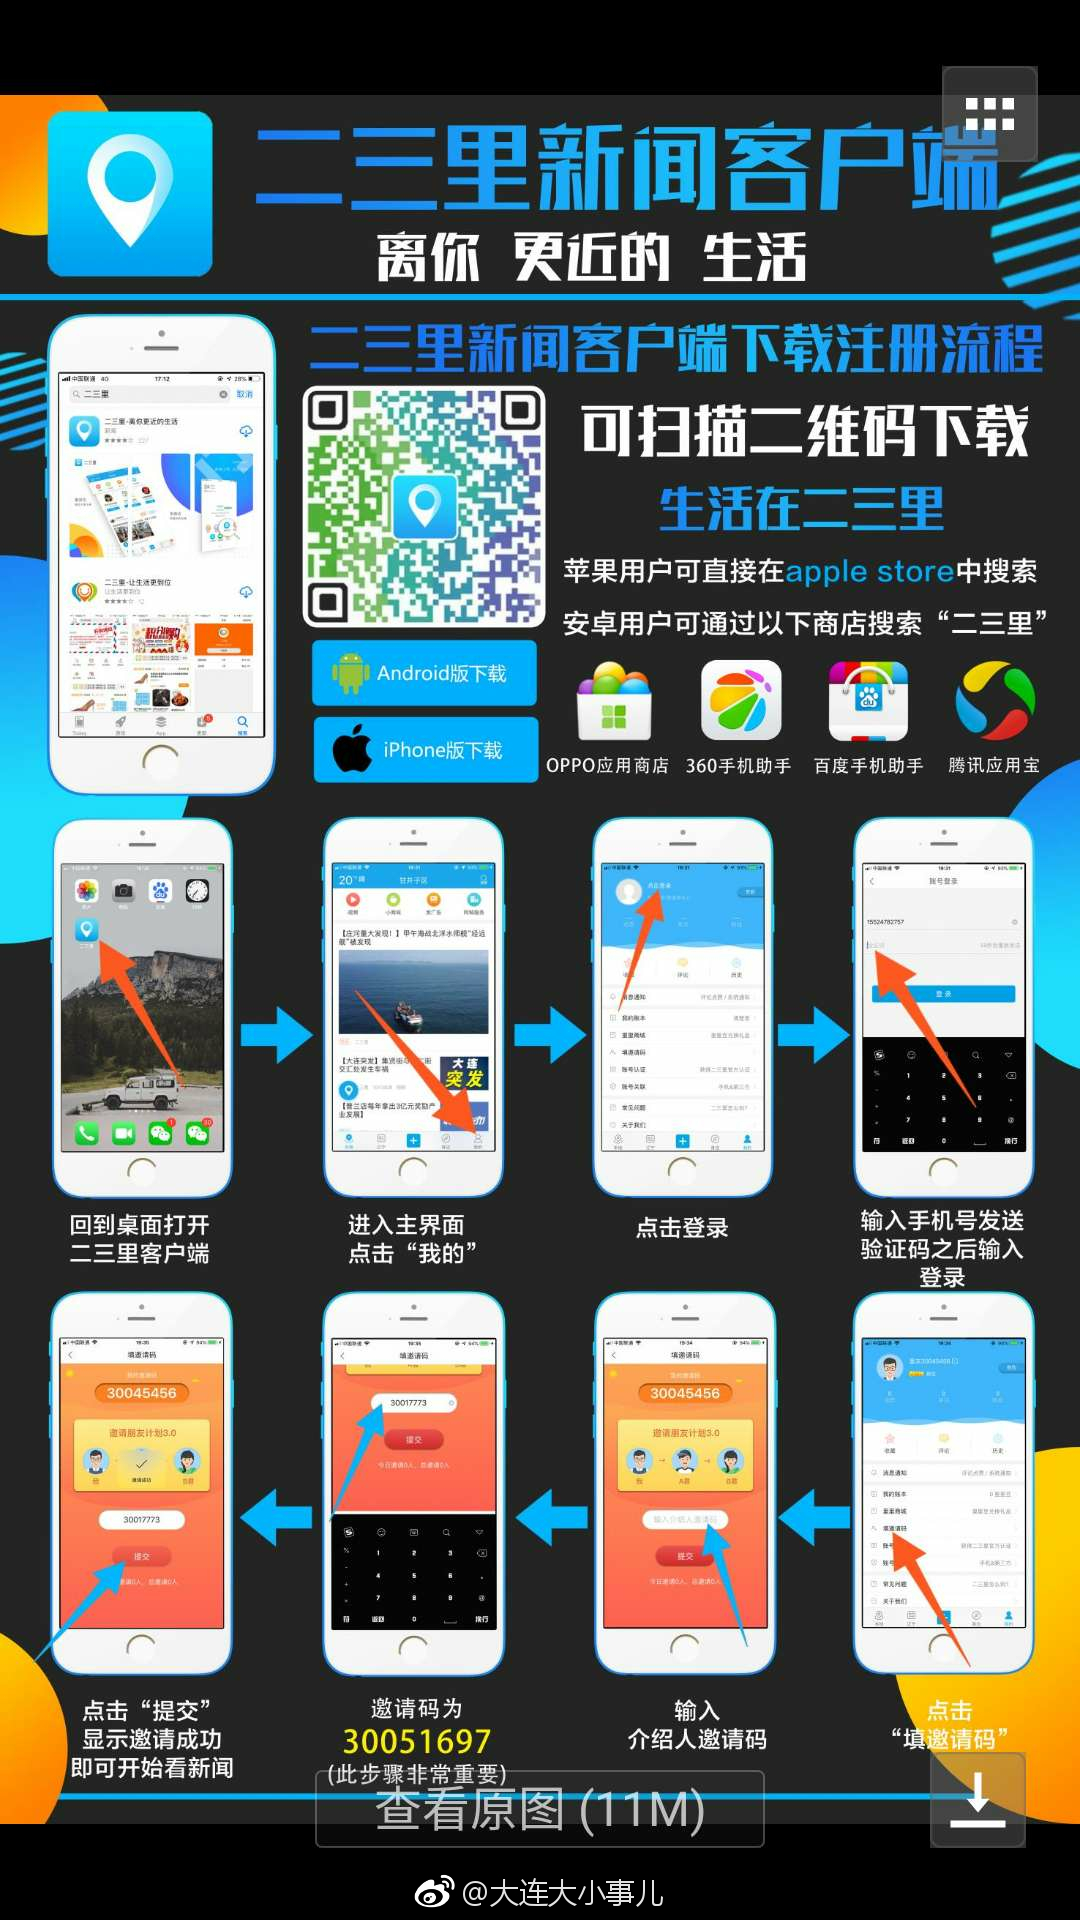 包含浙江新闻客户端电脑app下载的词条